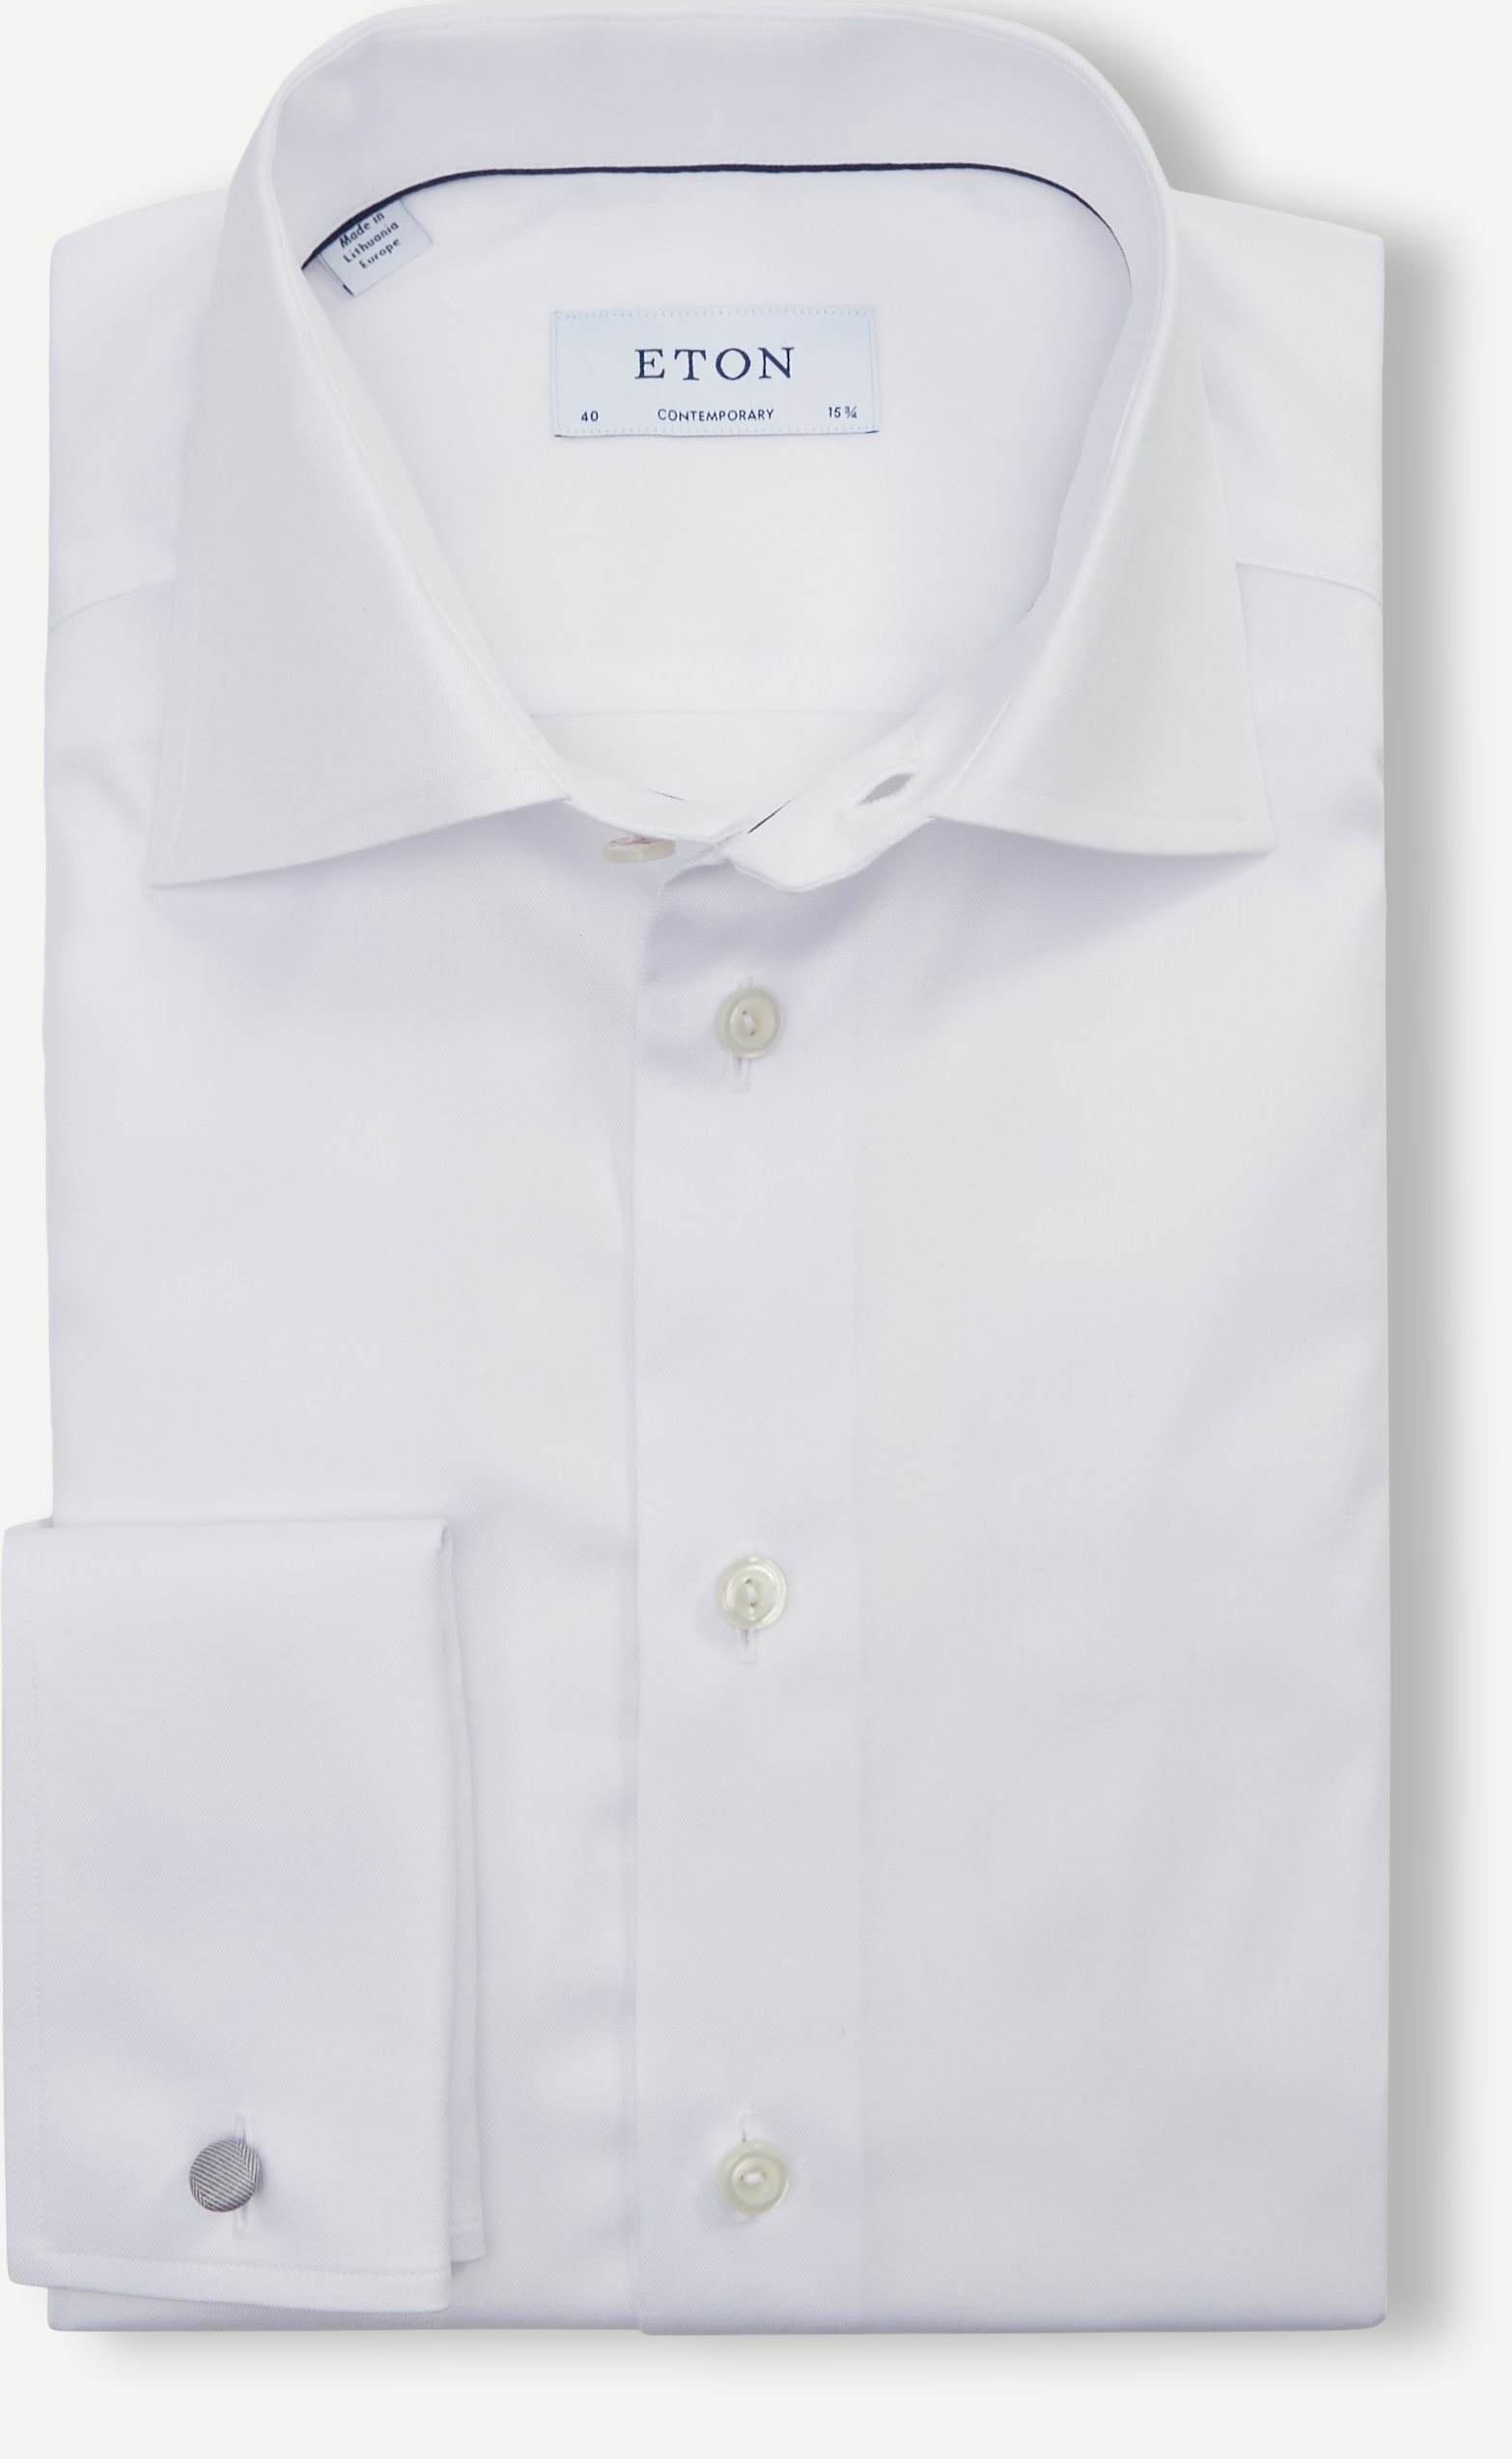 Eton Shirts 3000 79312 TWILL SHIRT - FRENCH CUFF White